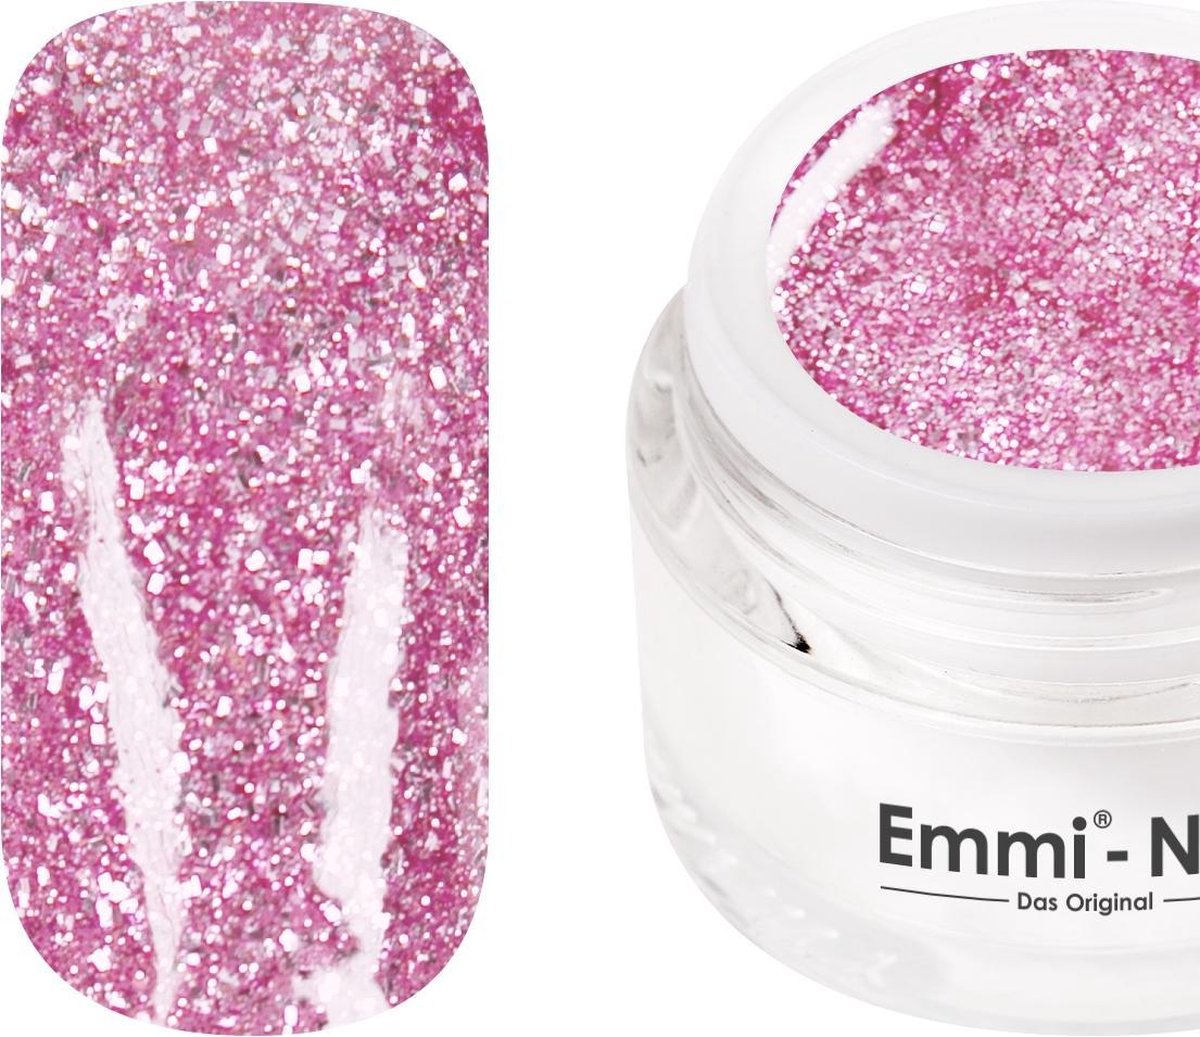 Emmi-Nail Glitttergel Pink Princess F375, 5 ml